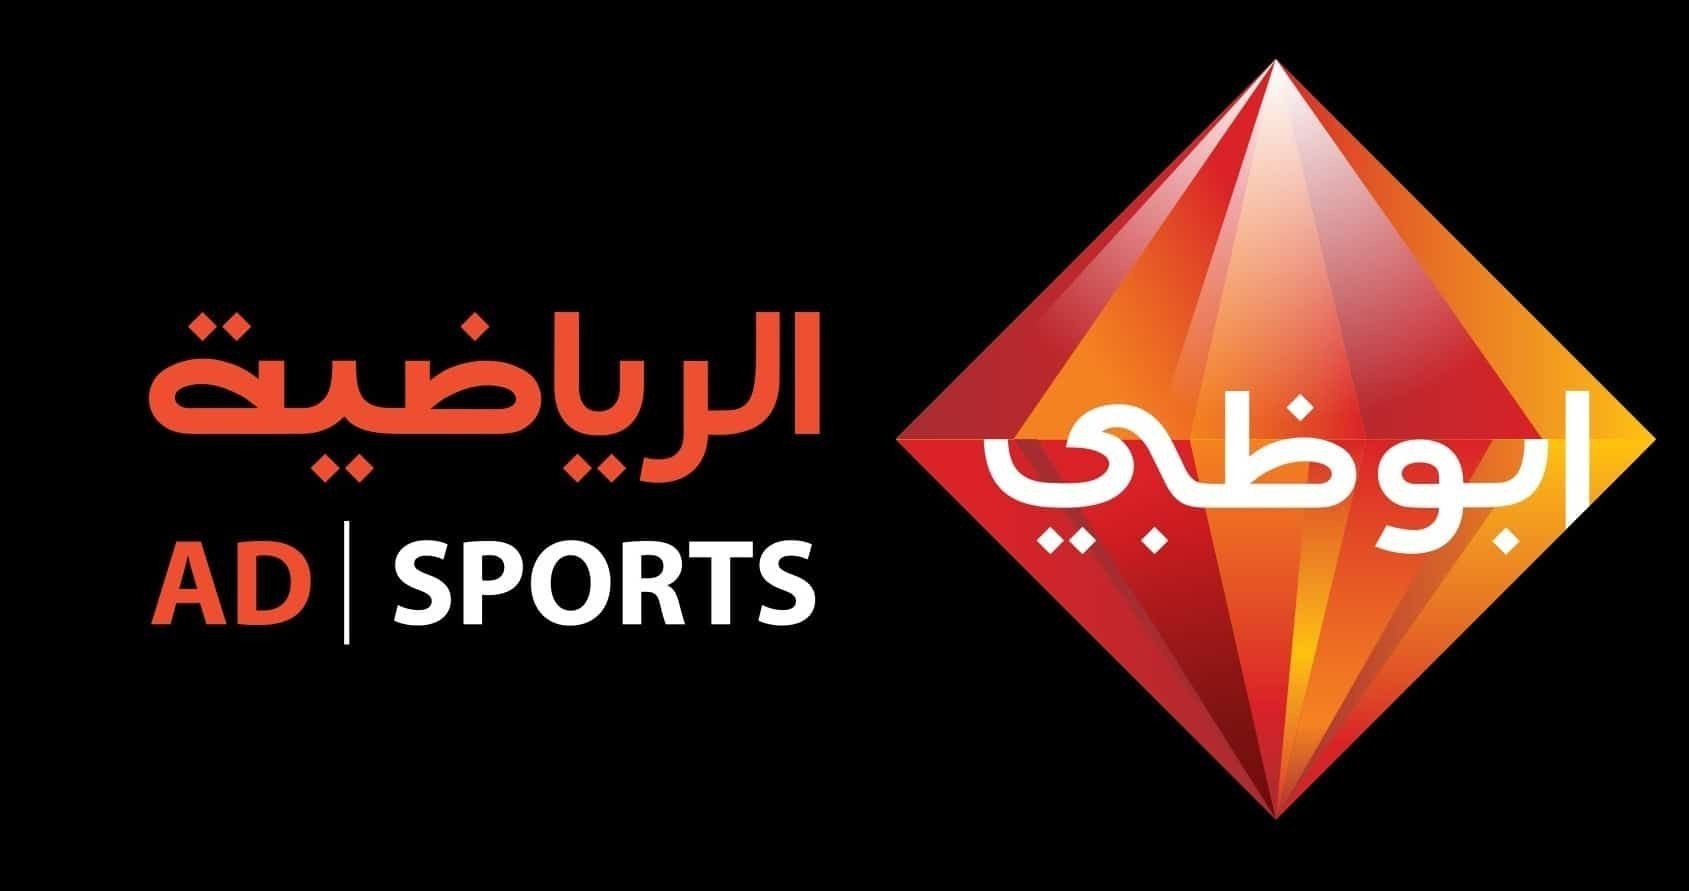  تردد قنوات ابو ظبي الرياضية AD Sports